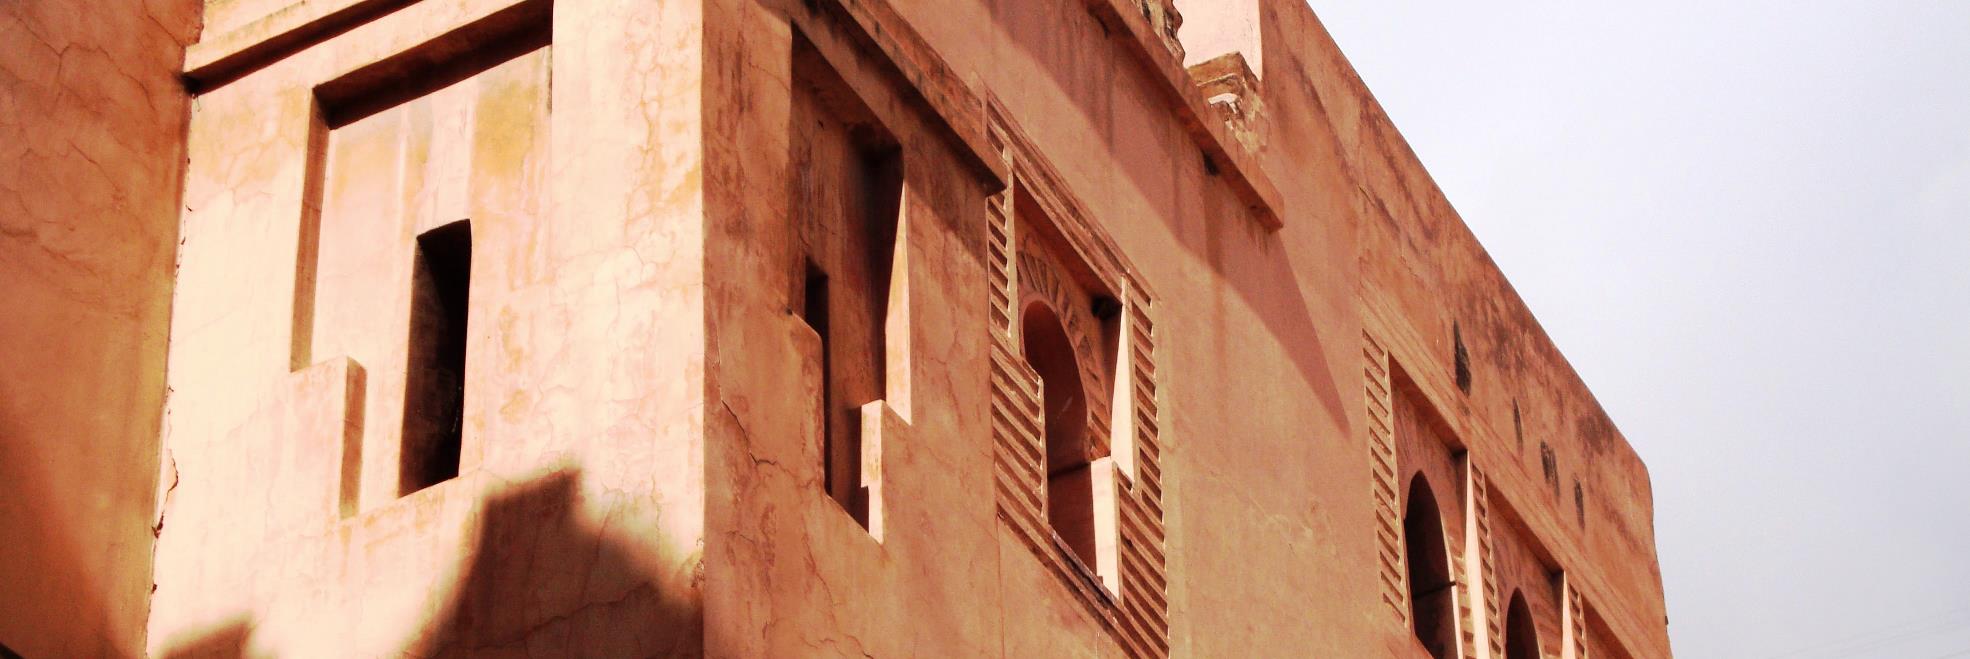 morocco architecture